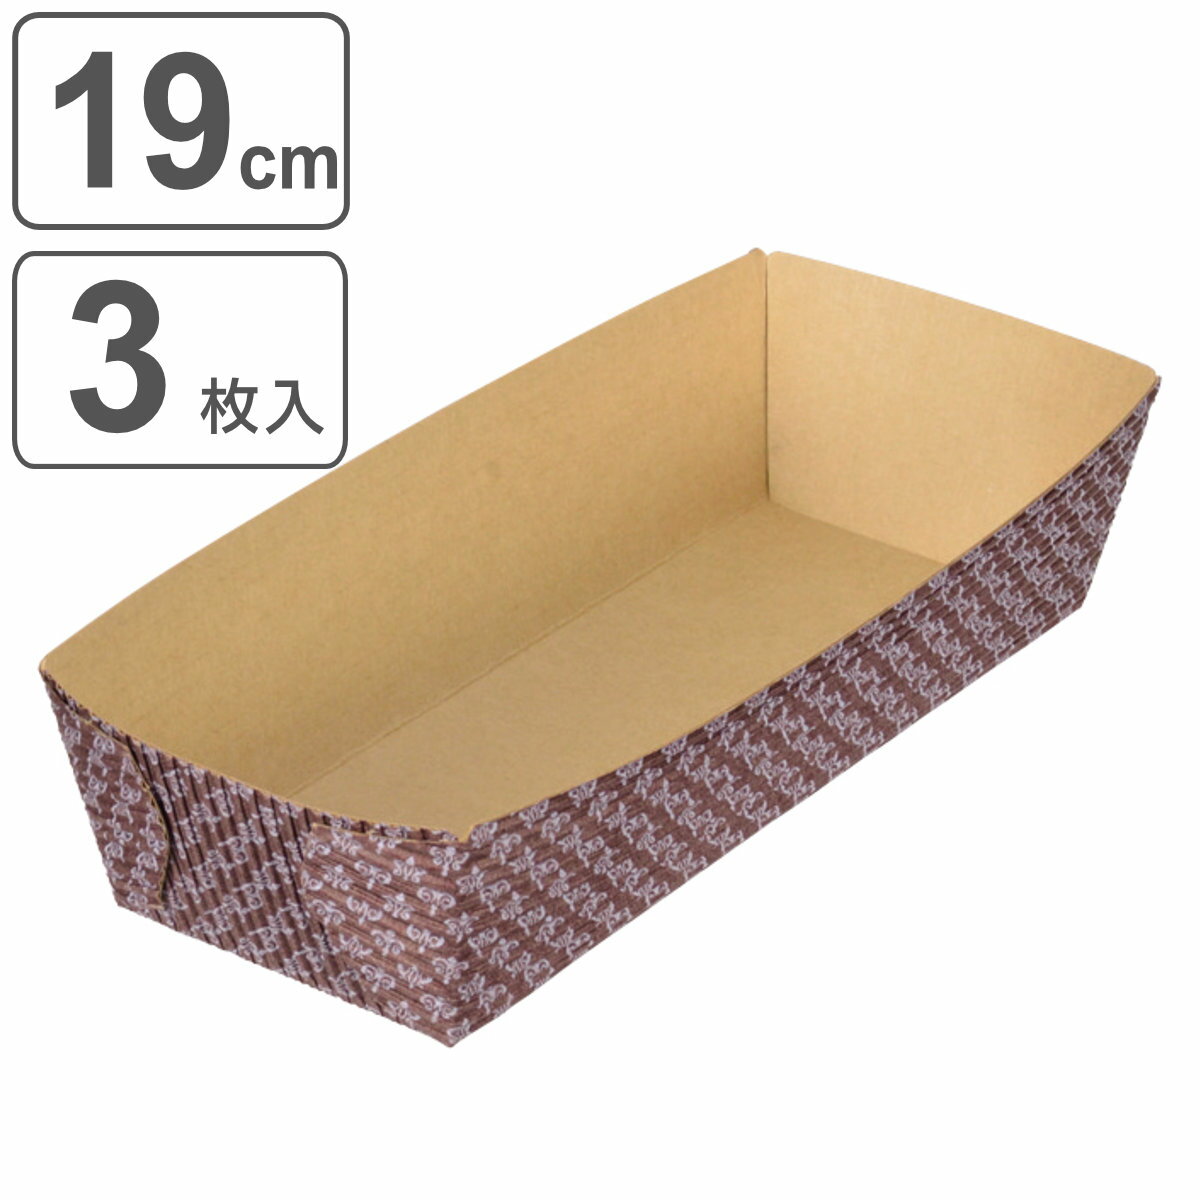 パウンドケーキ型 19cm ラフィネ 紙